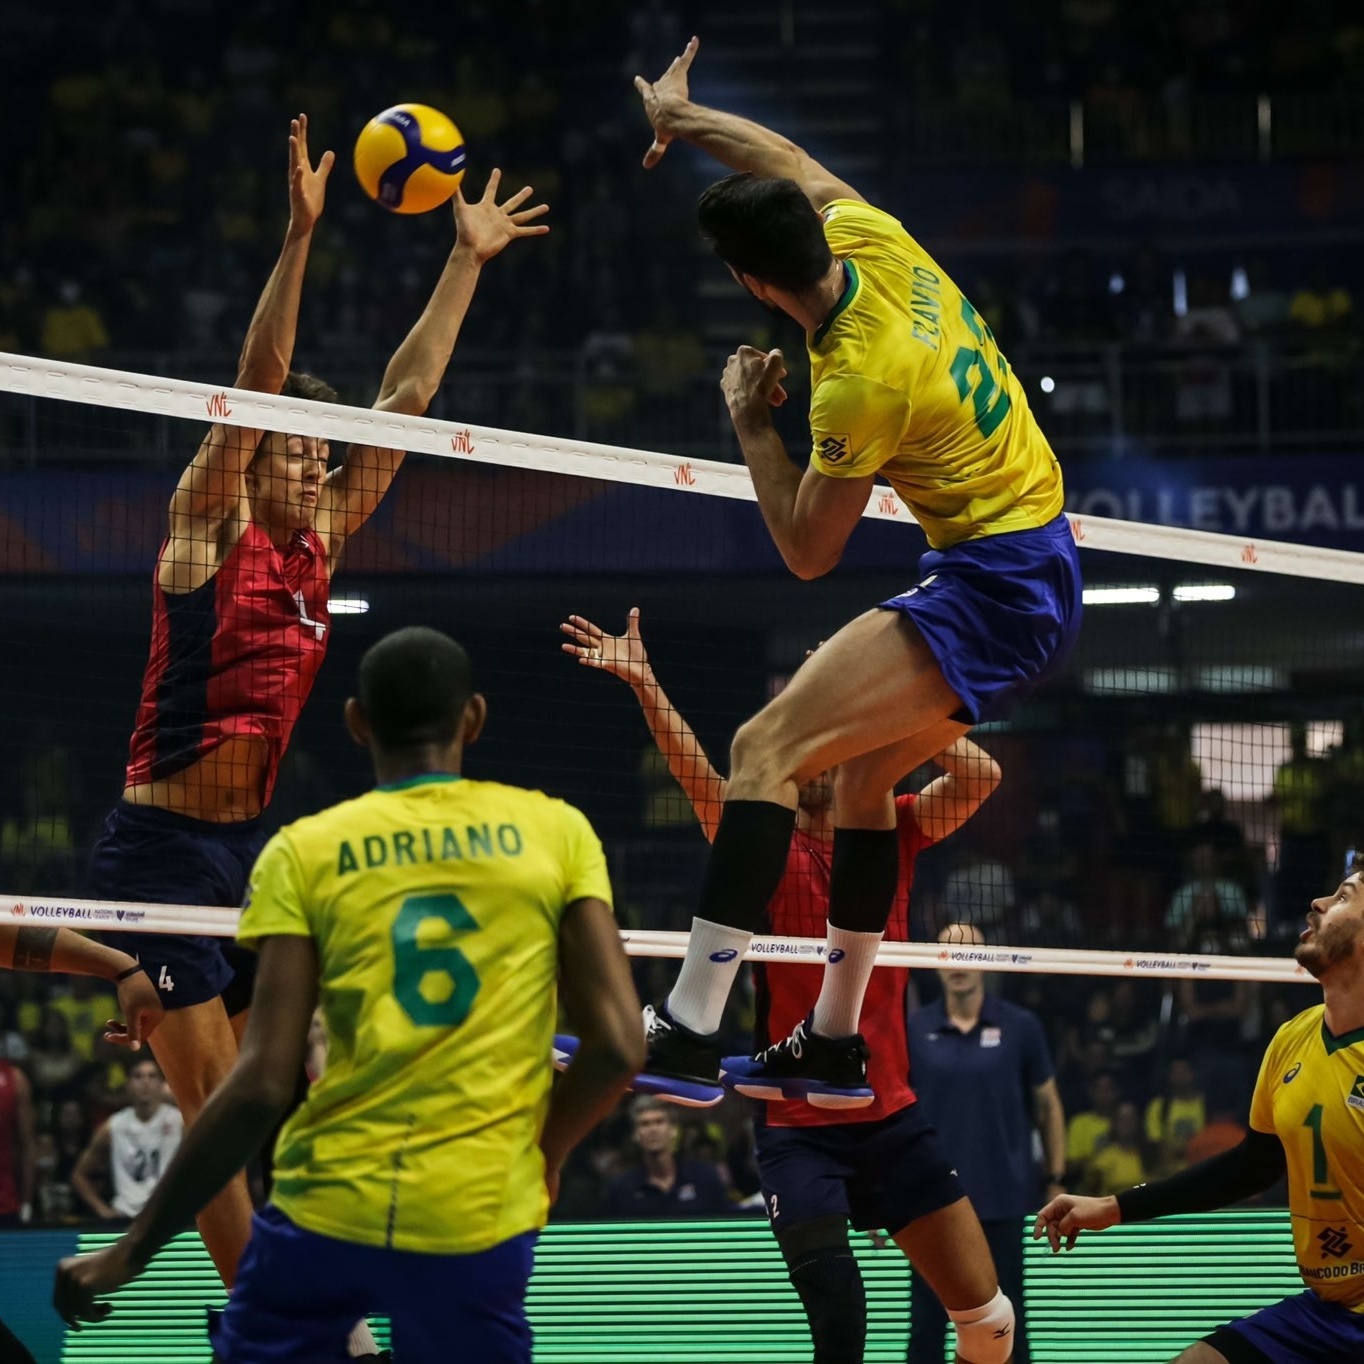 Liga das Nações de Vôlei: EUA supera o Brasil